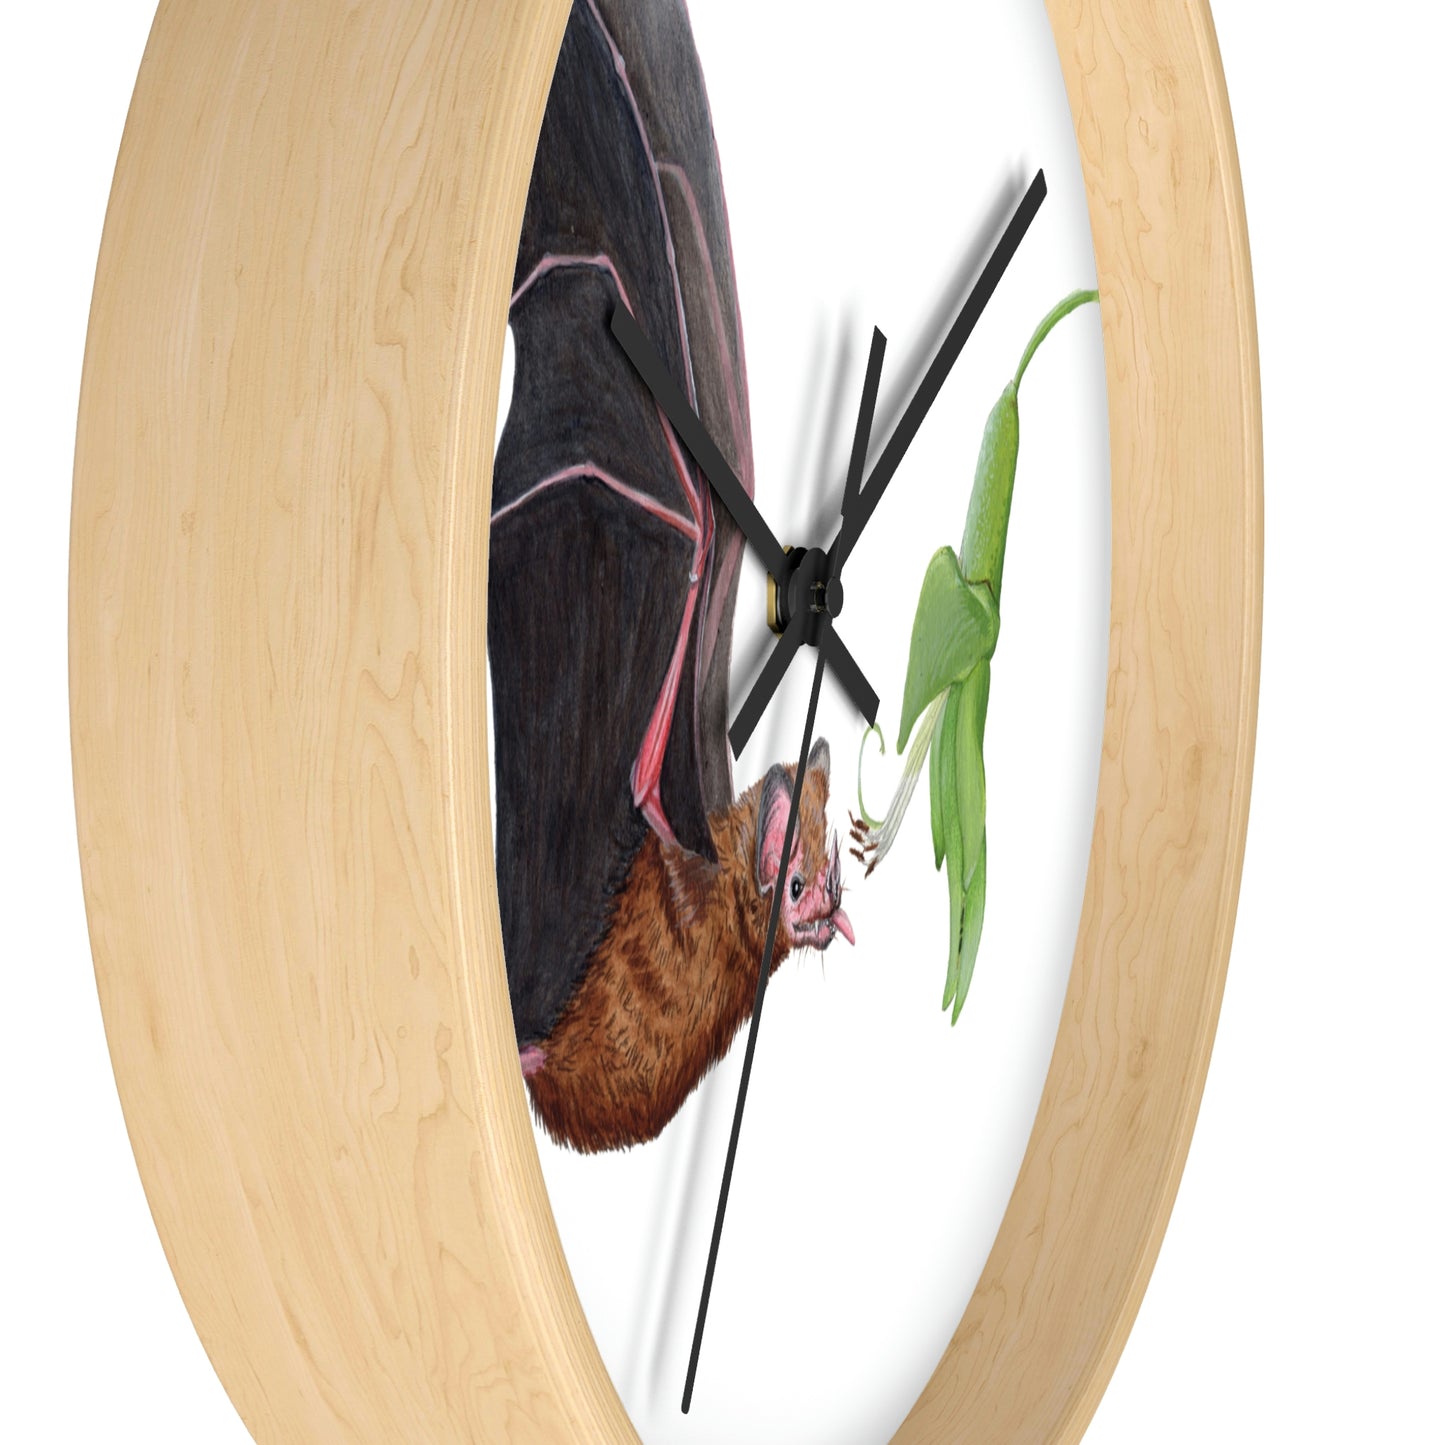 Commissaris's Long-tongued Bat Wall Clock